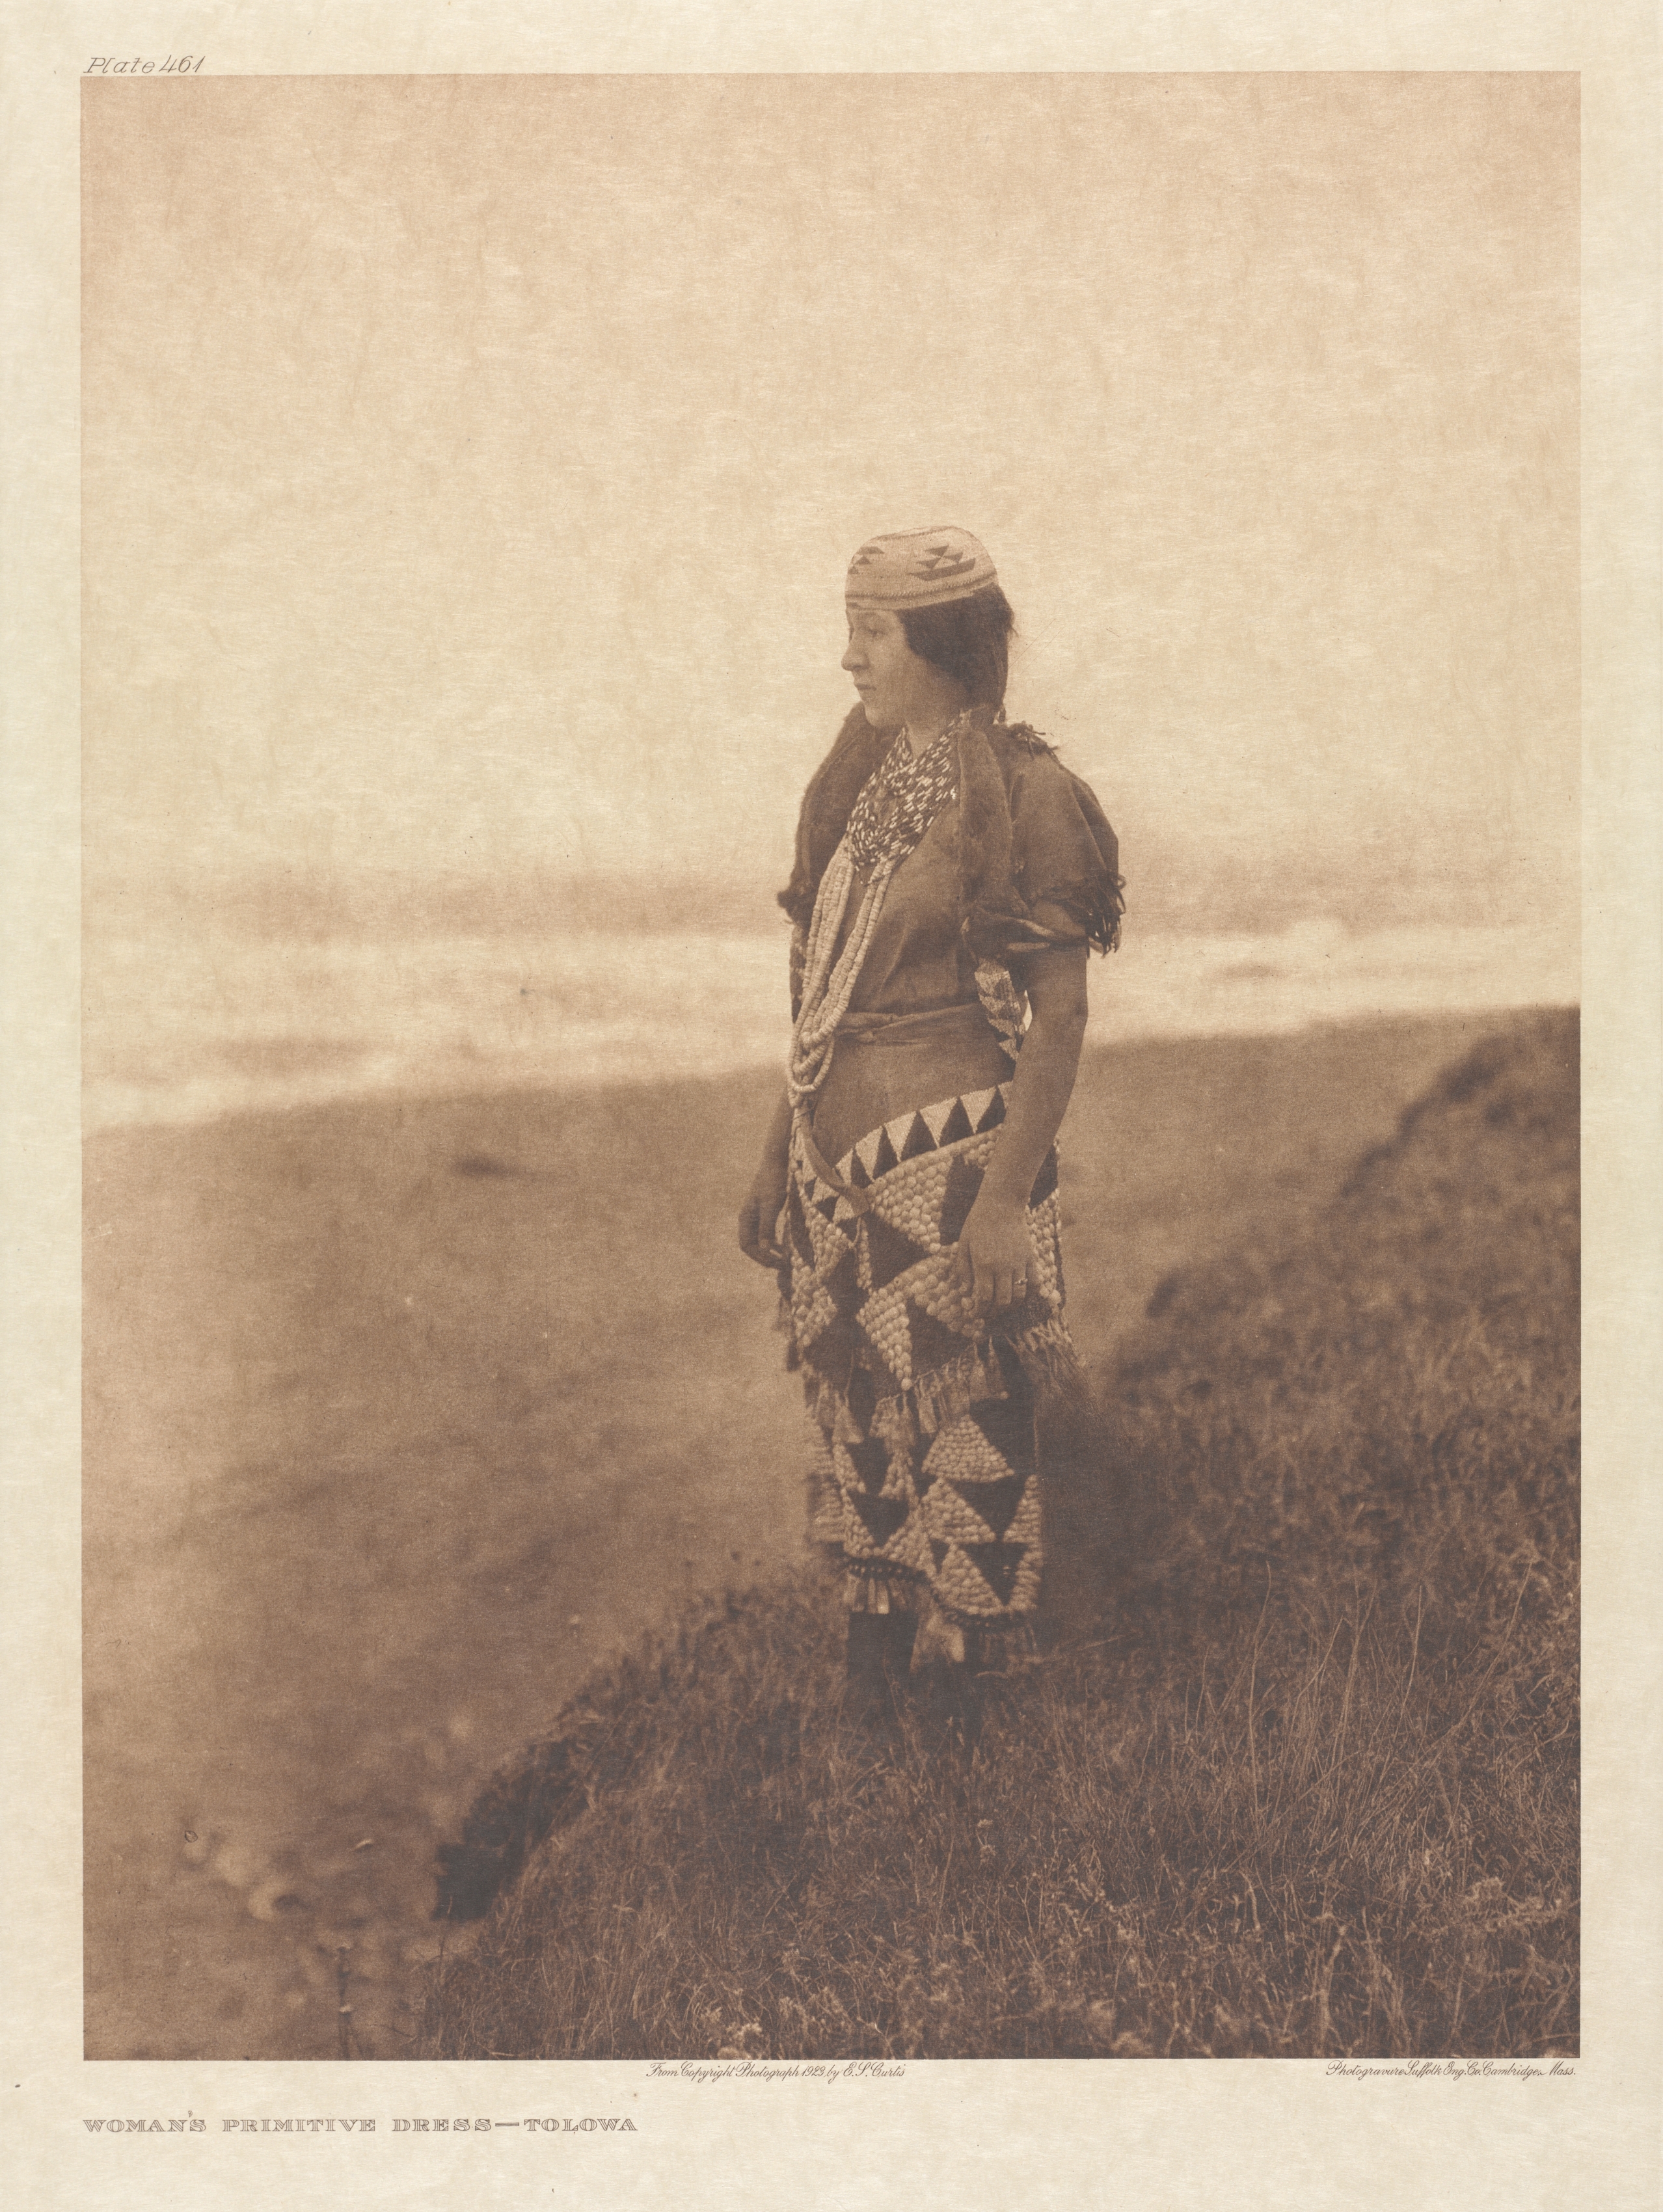 Portfolio XIII, Plate 461: Woman's Primitive Dress - Tolowa